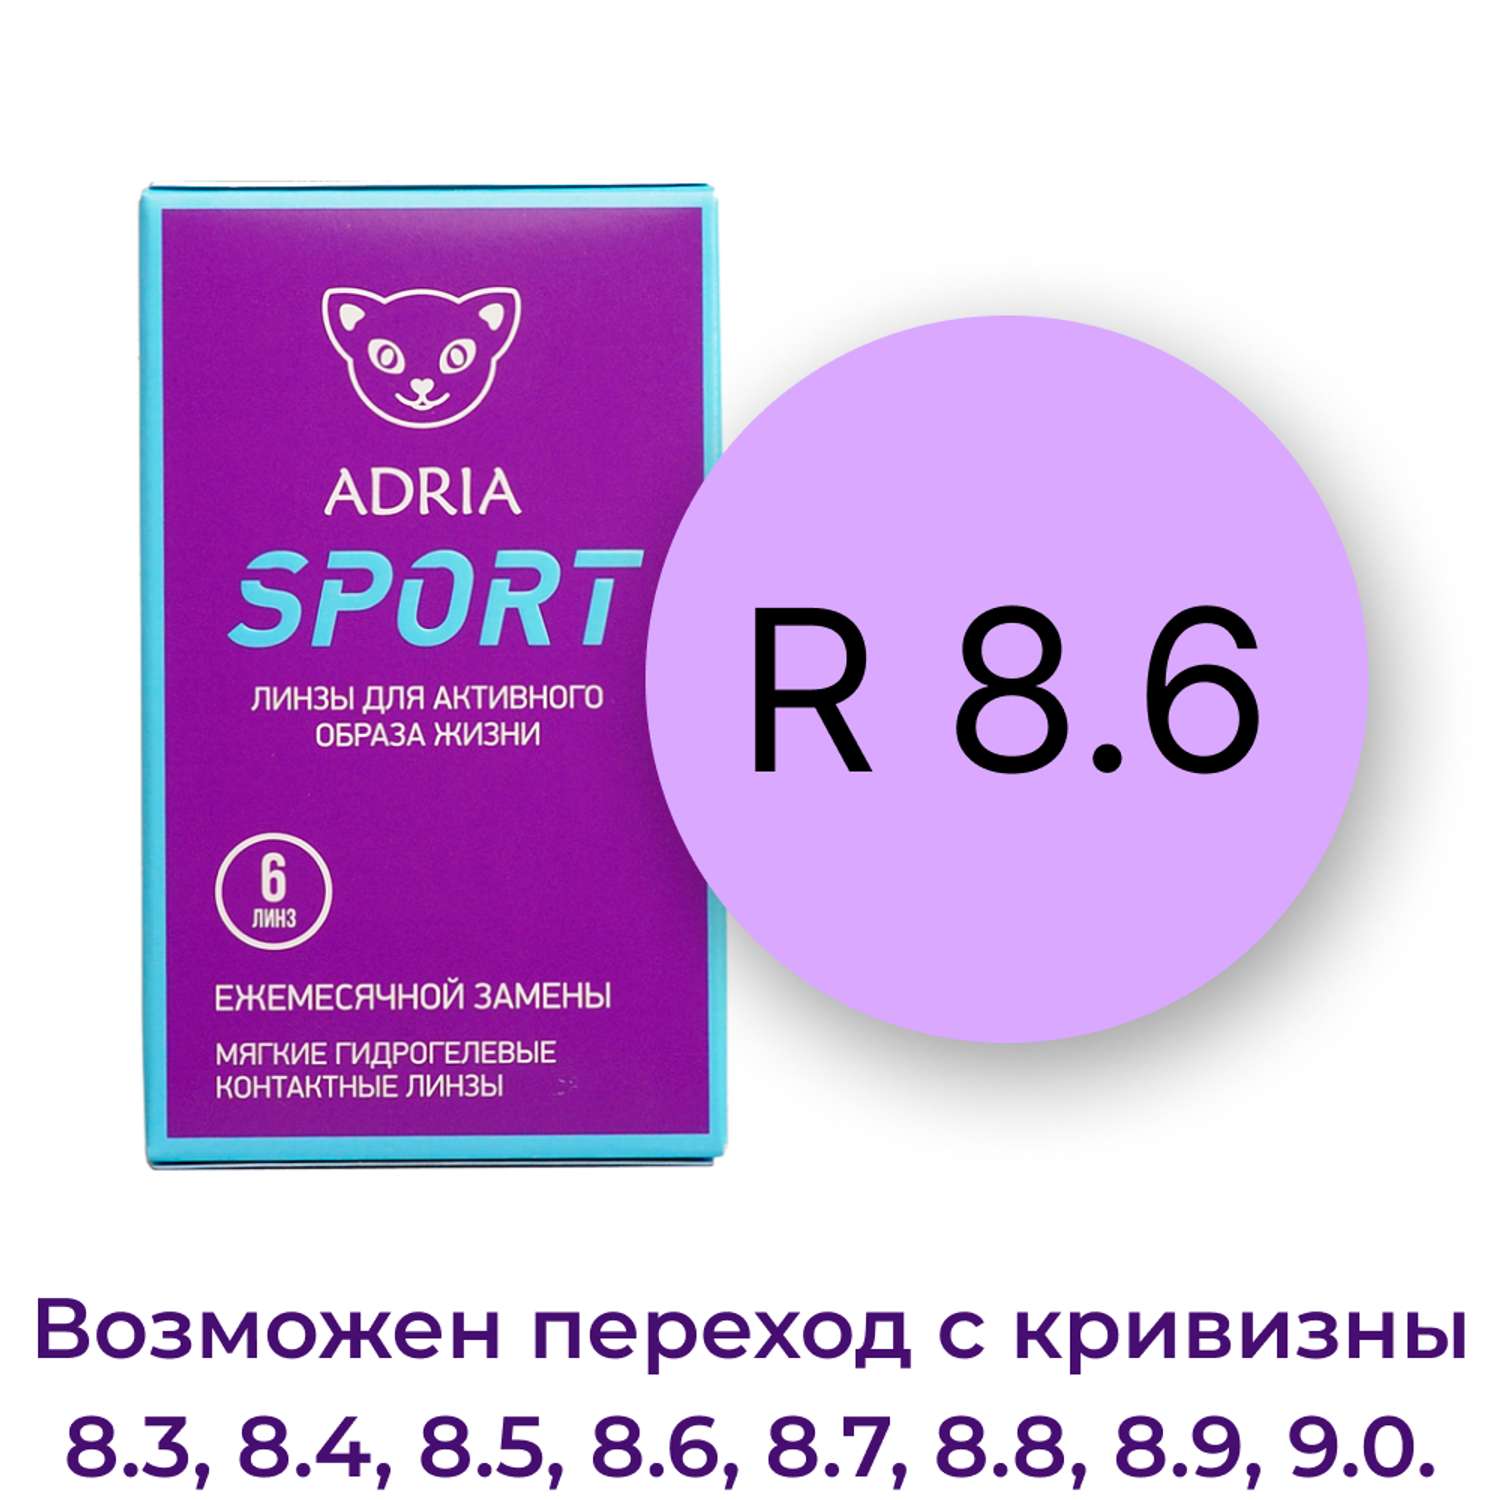 Контактные линзы ADRIA Sport 6 линз R 8.6 -4.75 - фото 3